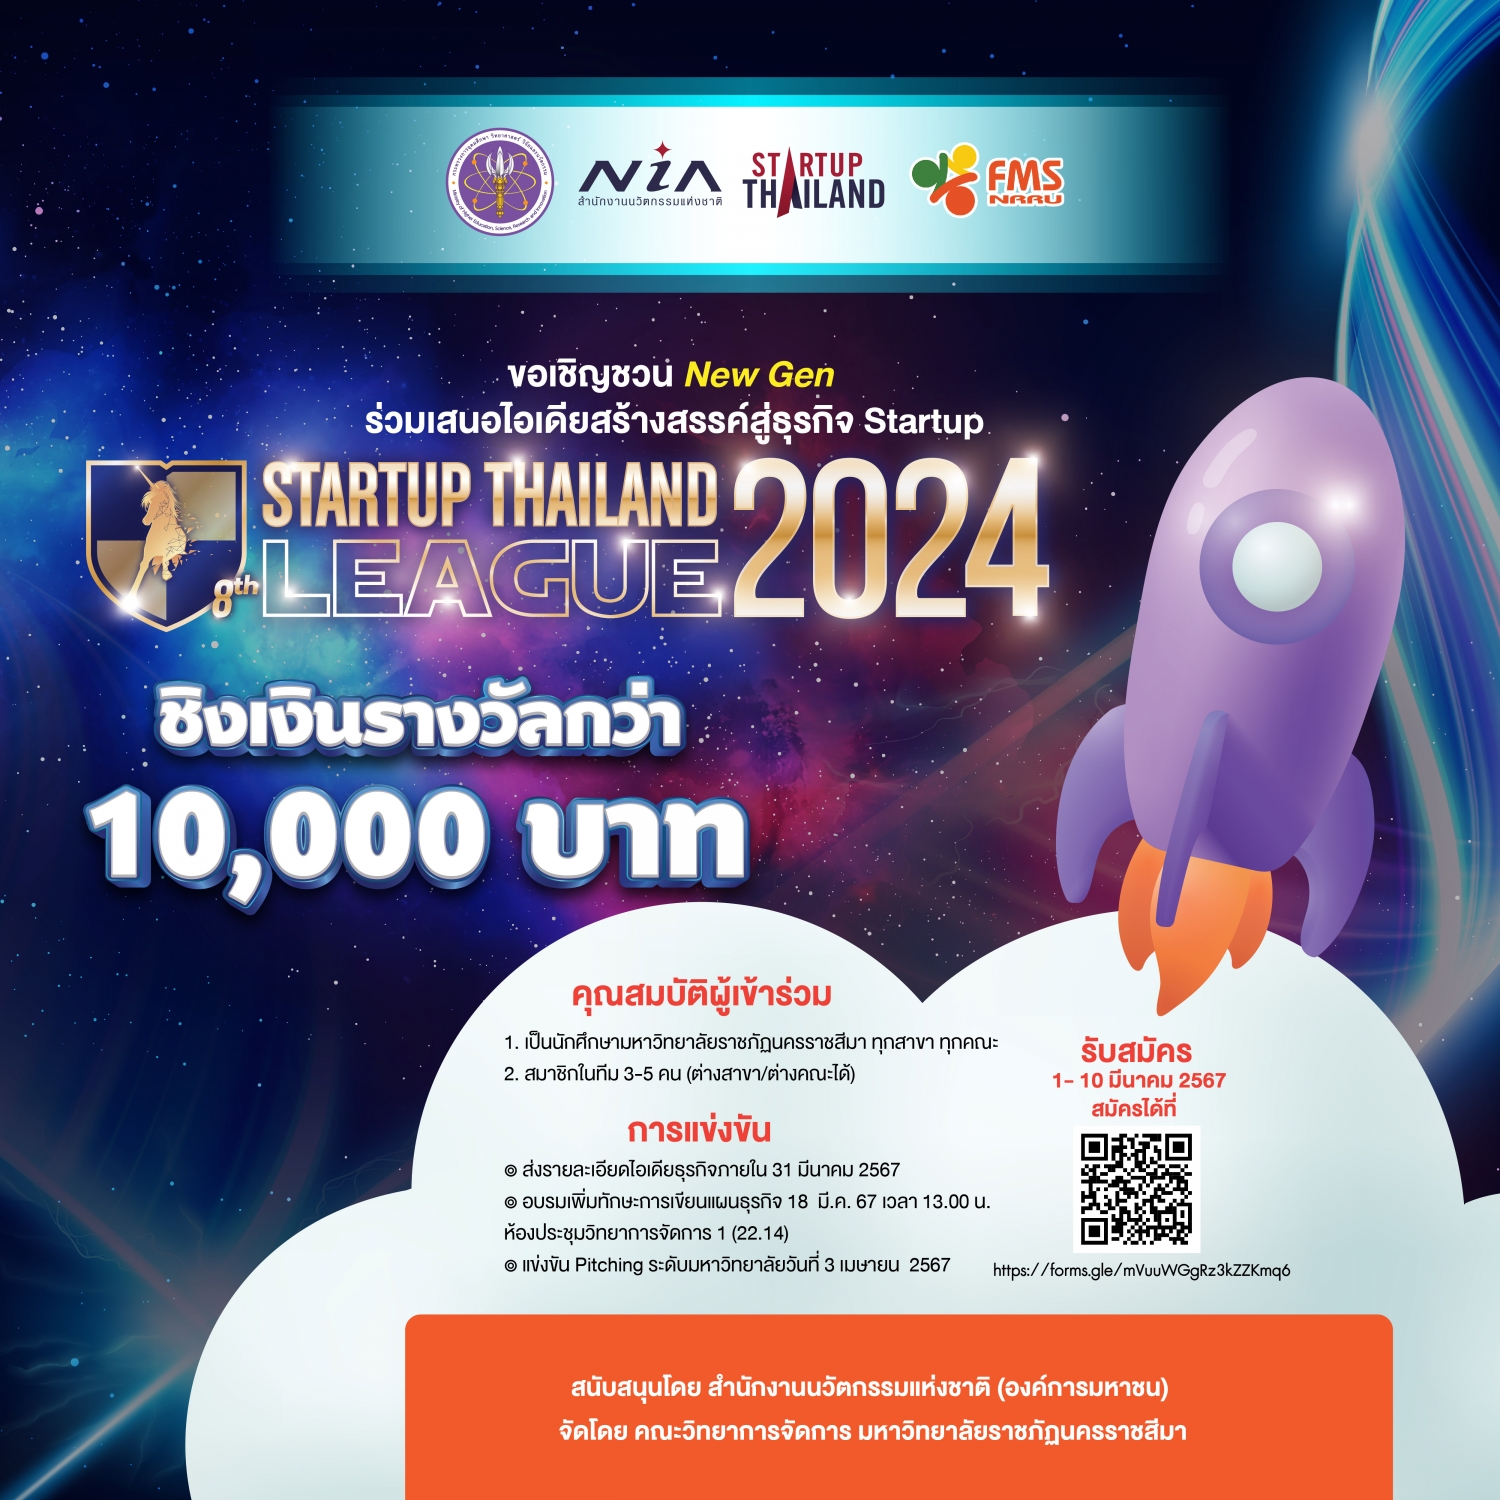 ขอเชิญชวน New Gen ร่วมเสนอไอเดียสร้างสรรค์ธุรกิจ Startup Thailand League 2024 ชิงเงินรางวัลกว่า 10,000 บาท